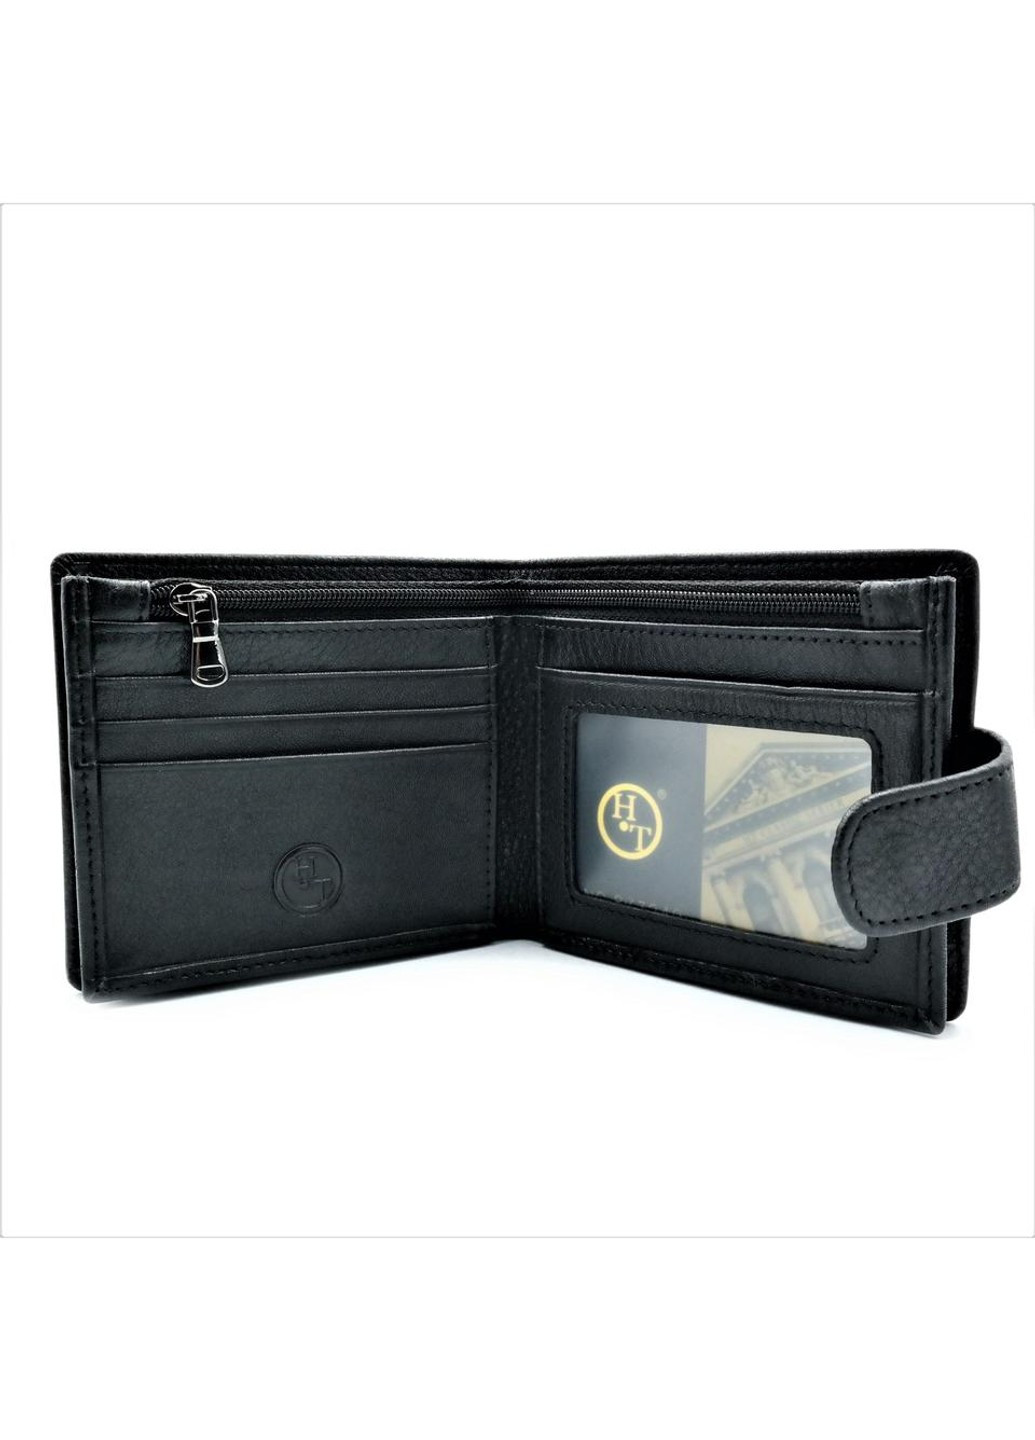 Чоловічий шкіряний гаманець 11 х 10 х 2,5 см Чорний wtro-408 Weatro (272950027)